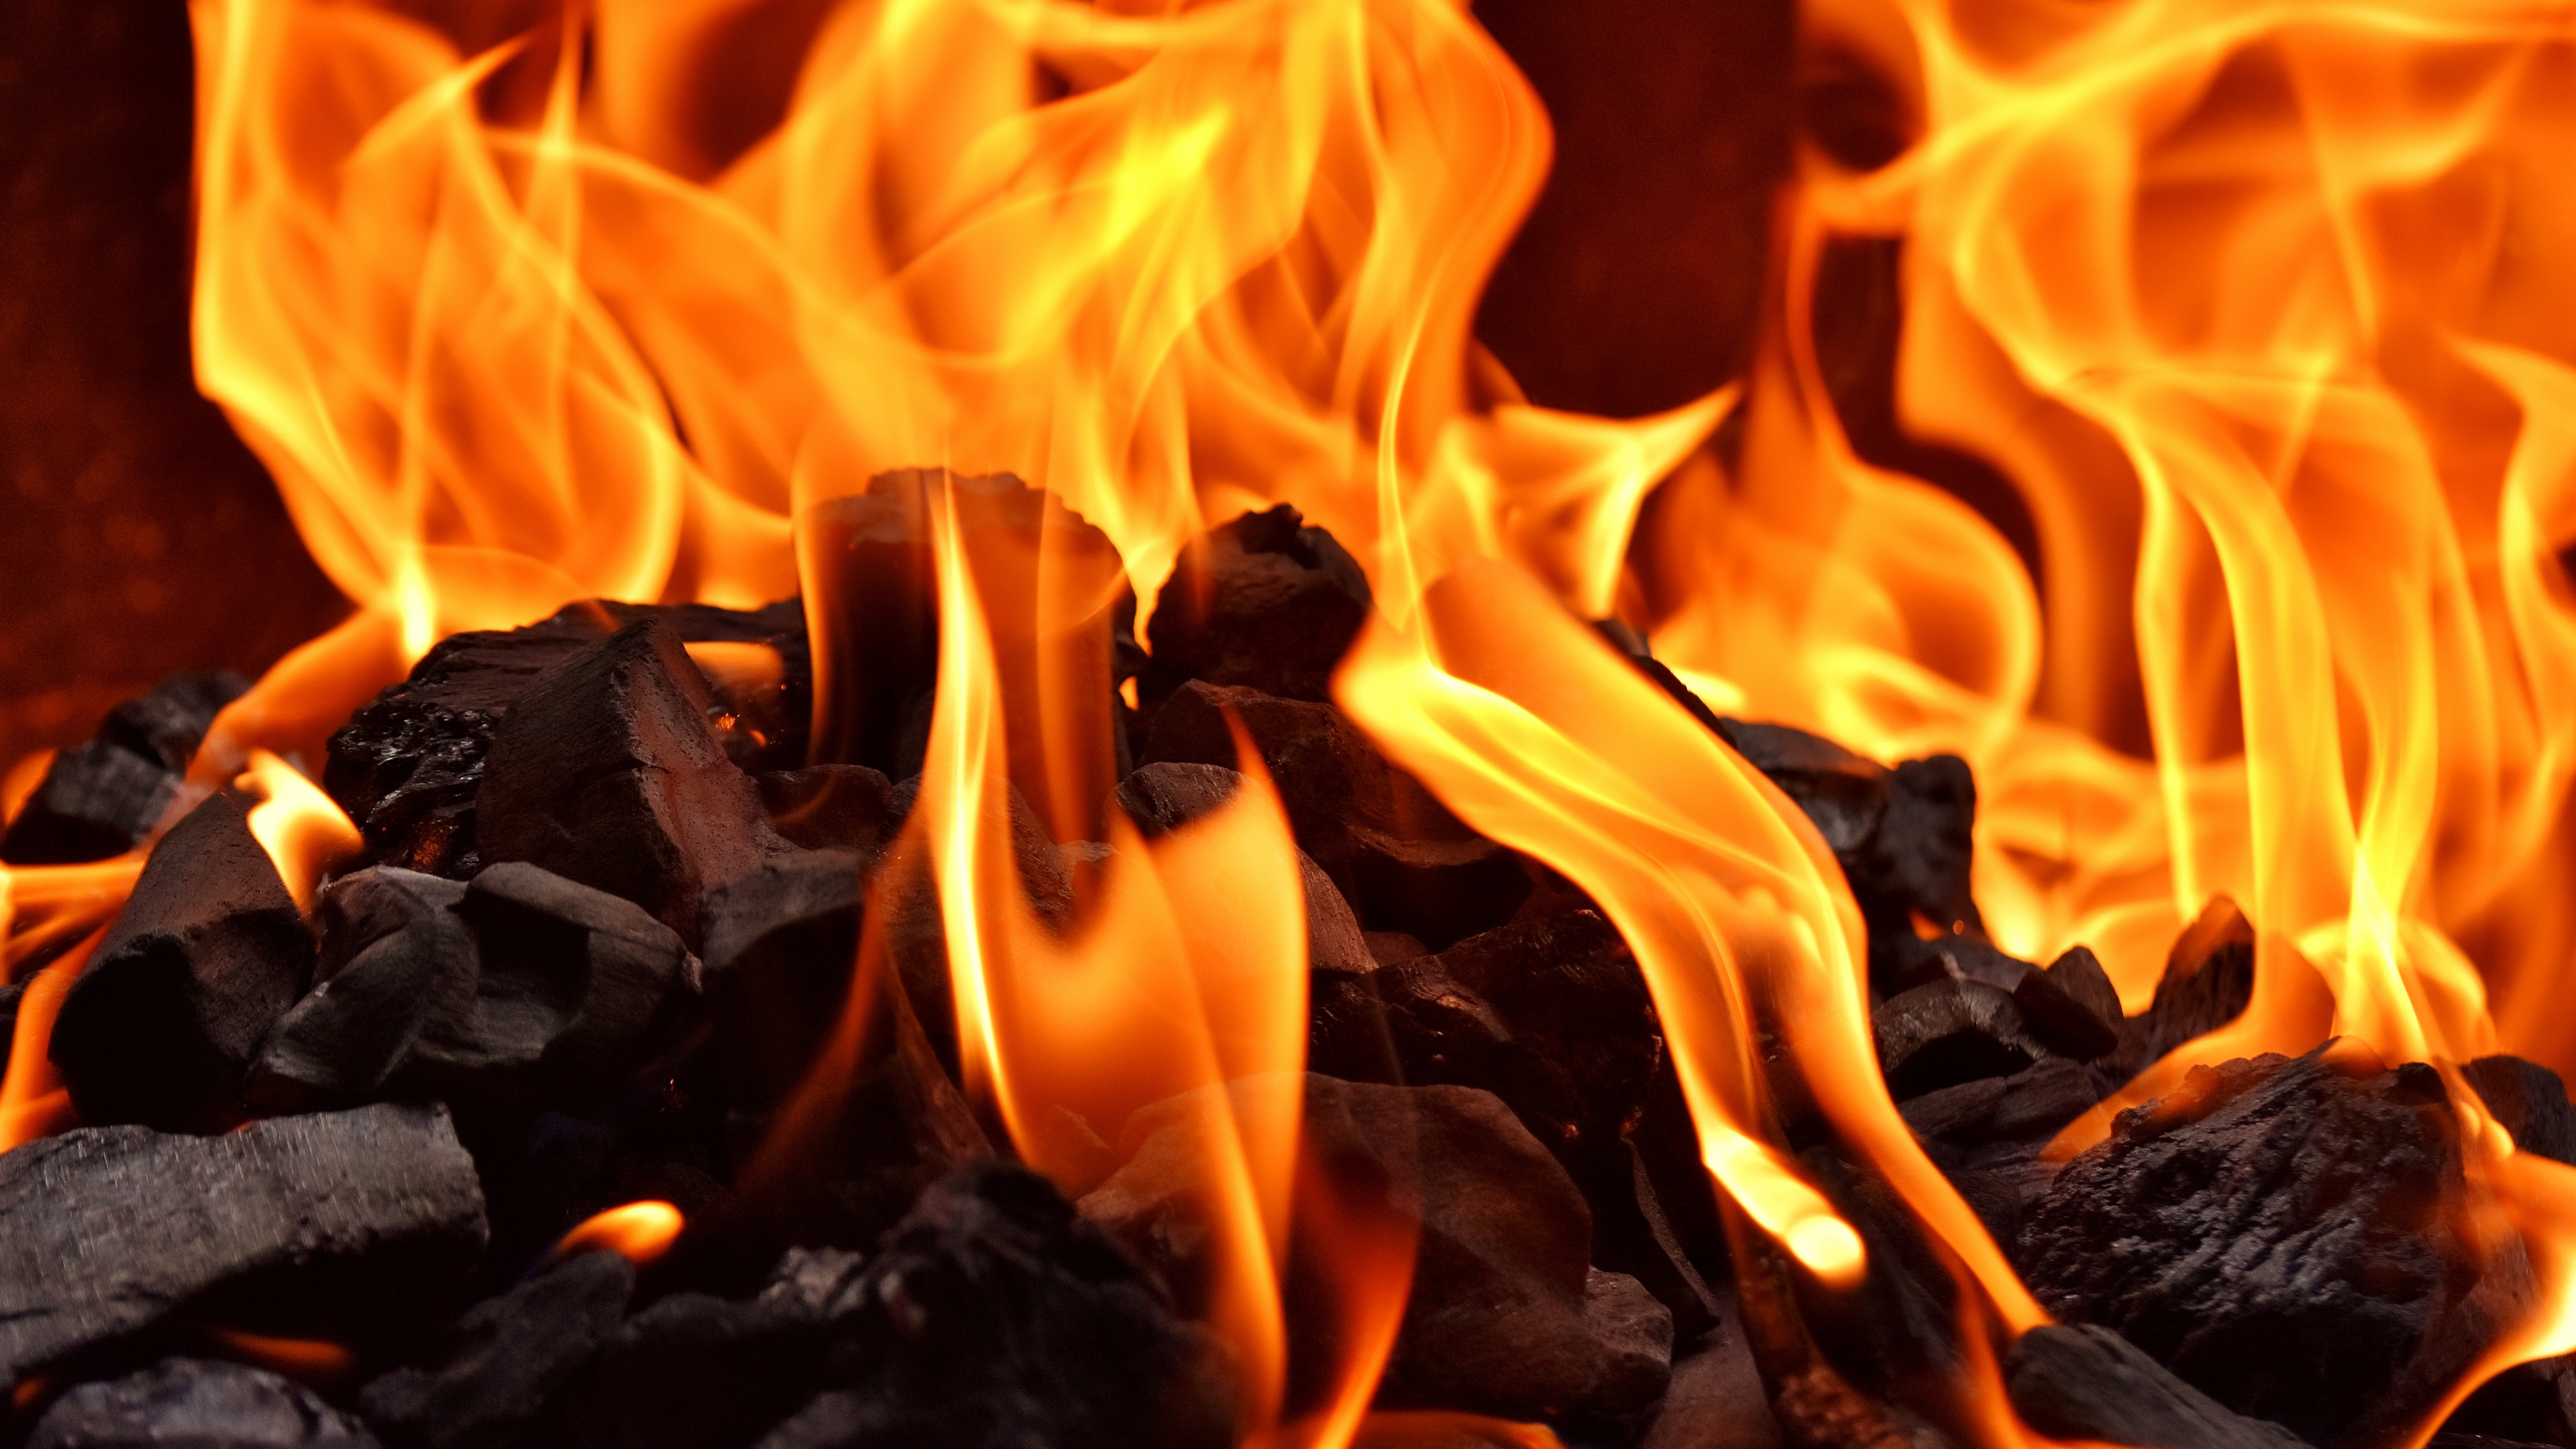 火焰, 木炭, 燃烧, 热, 篝火 壁纸 3840x2160 允许